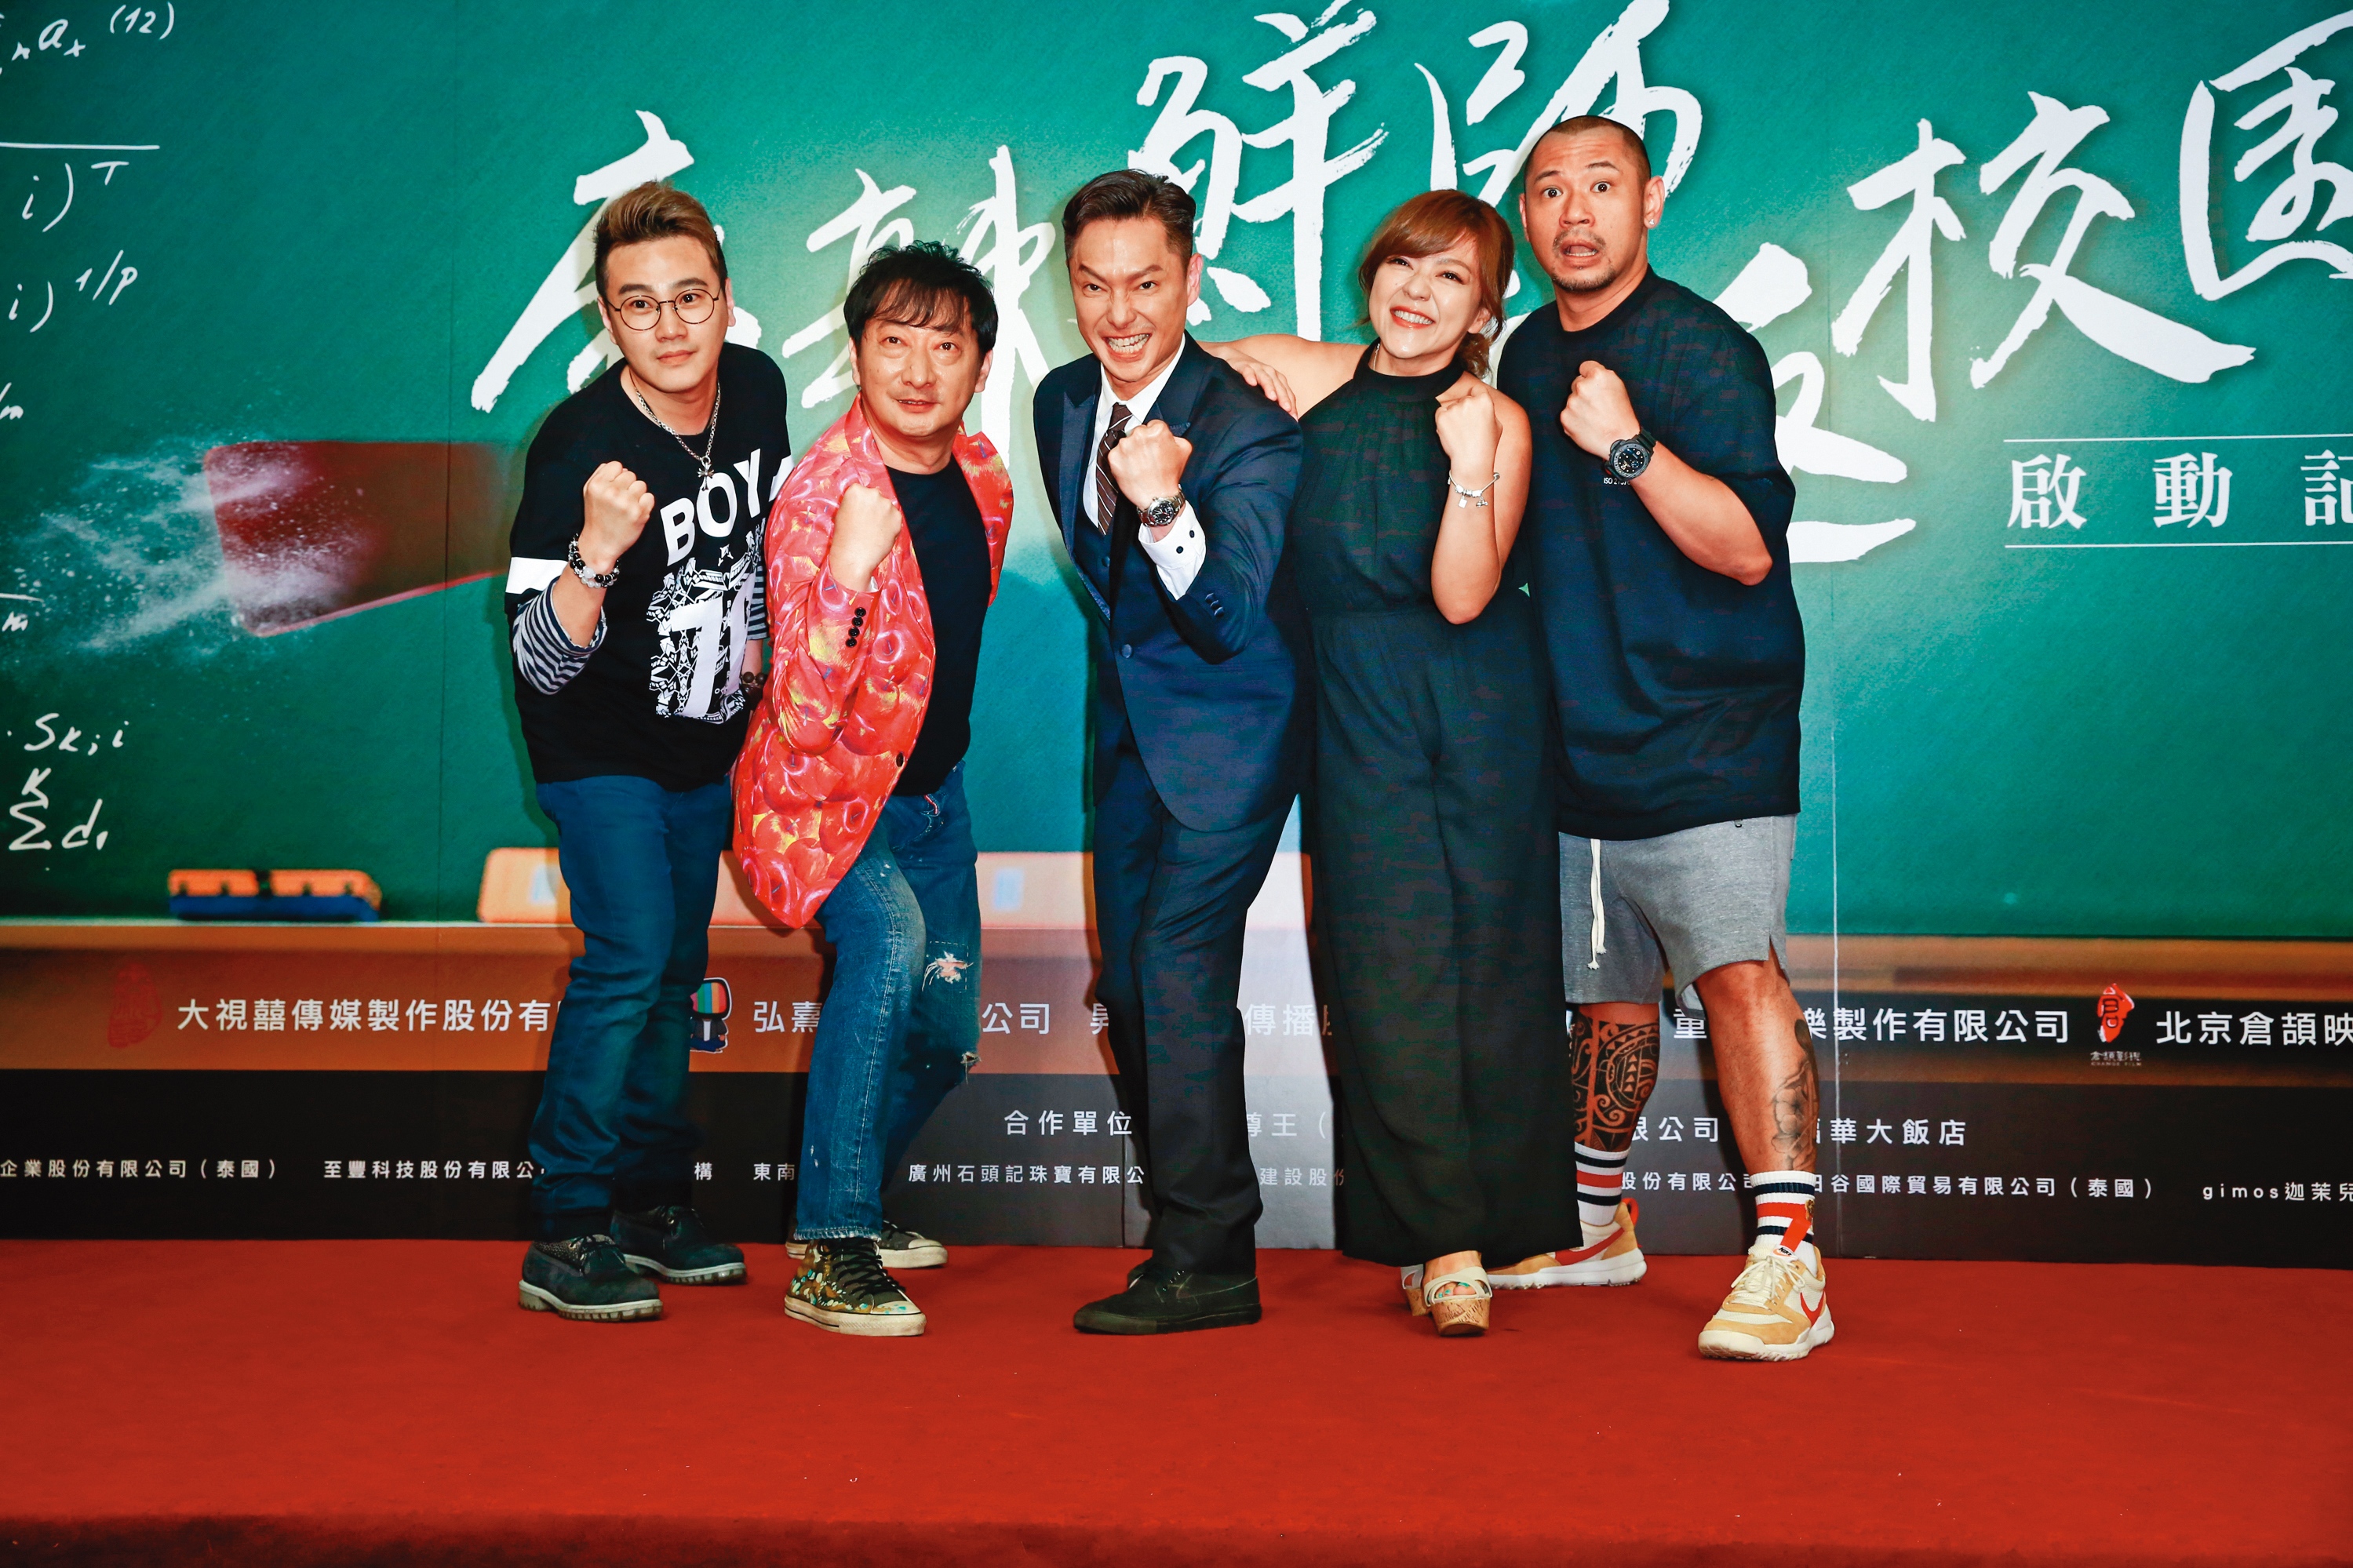 金剛（右一）2002年以《麻辣鮮師》中的「金剛」一角走紅，2017年又再度翻拍電影版。左起為綠茶、九孔、謝祖武與杜詩梅。